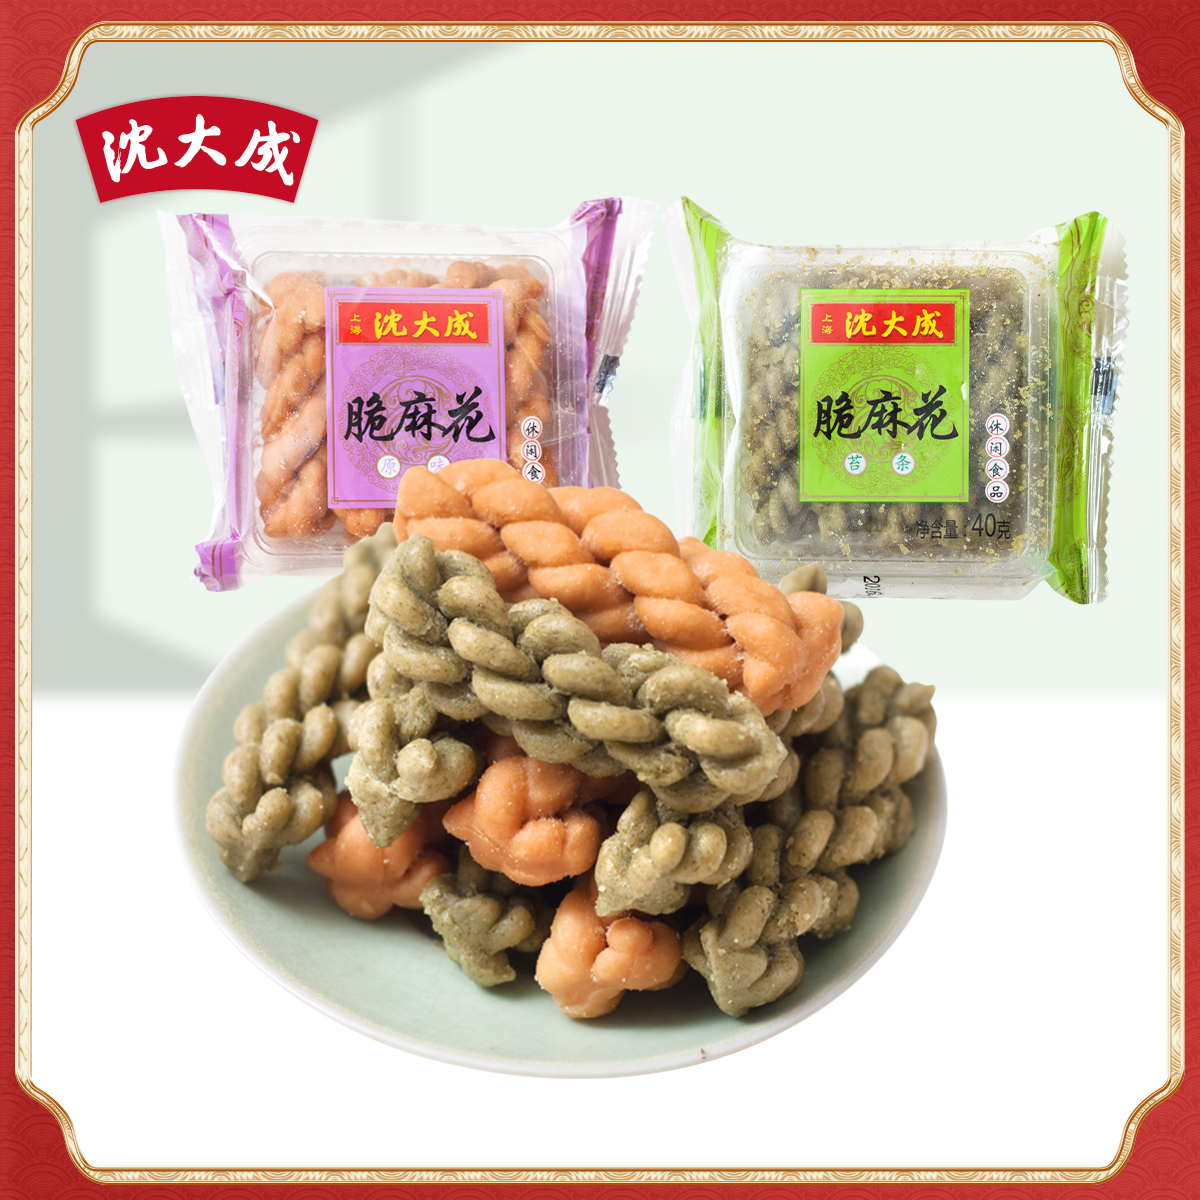 上海零食 中华老字号沈大成 苔条麻花 传统早点小吃儿时零食 240g